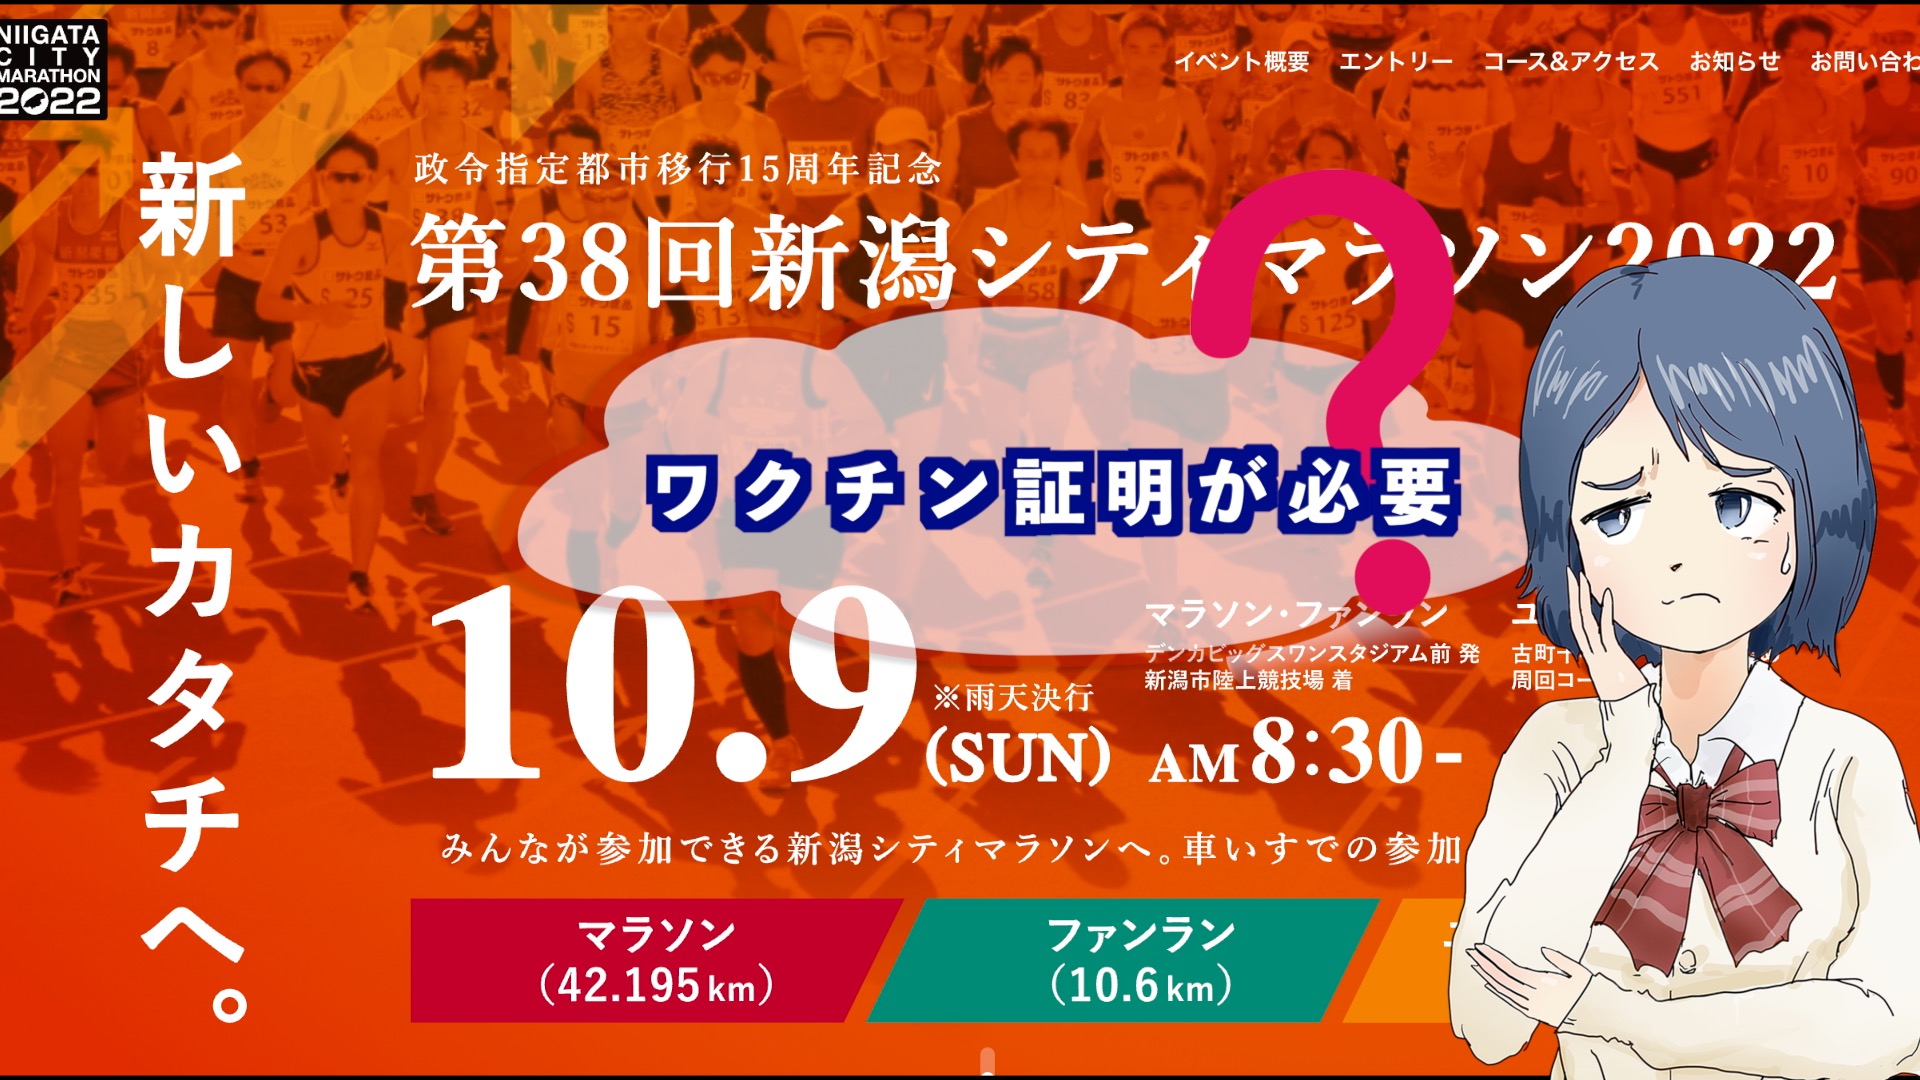 『新潟シティマラソン2022』のアイキャッチ画像